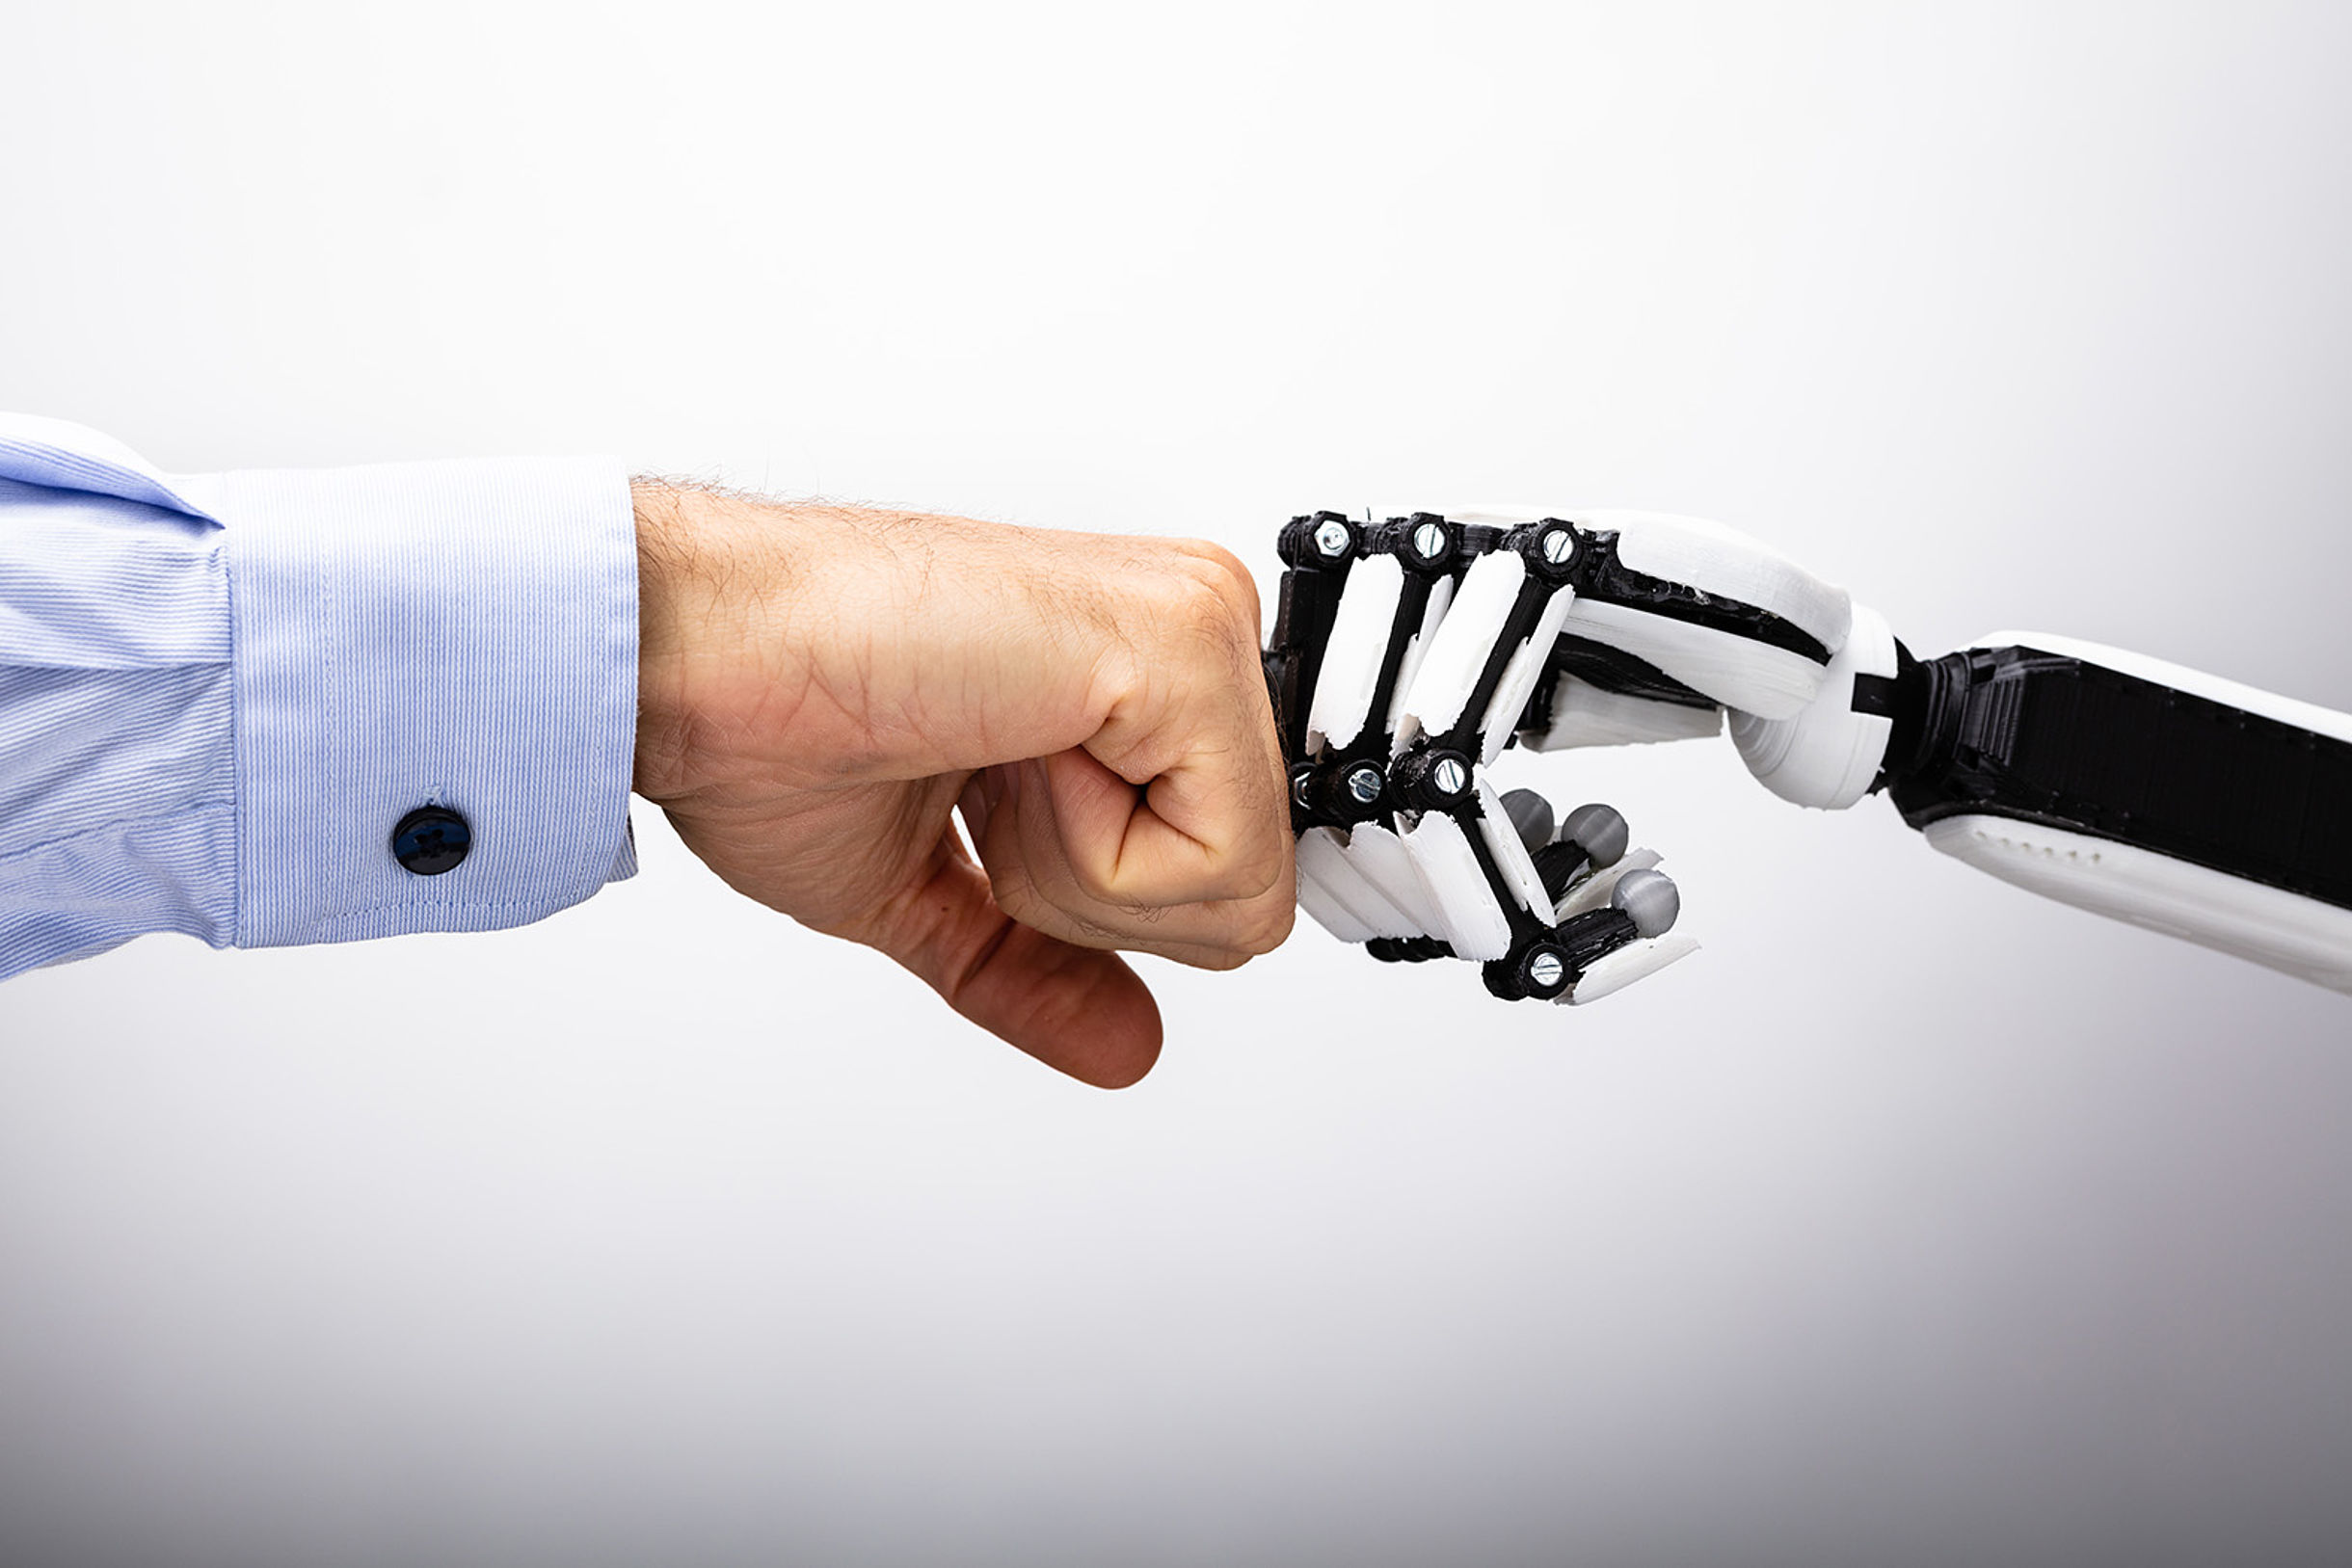 Begrüßung zwischen Mensch und Roboter